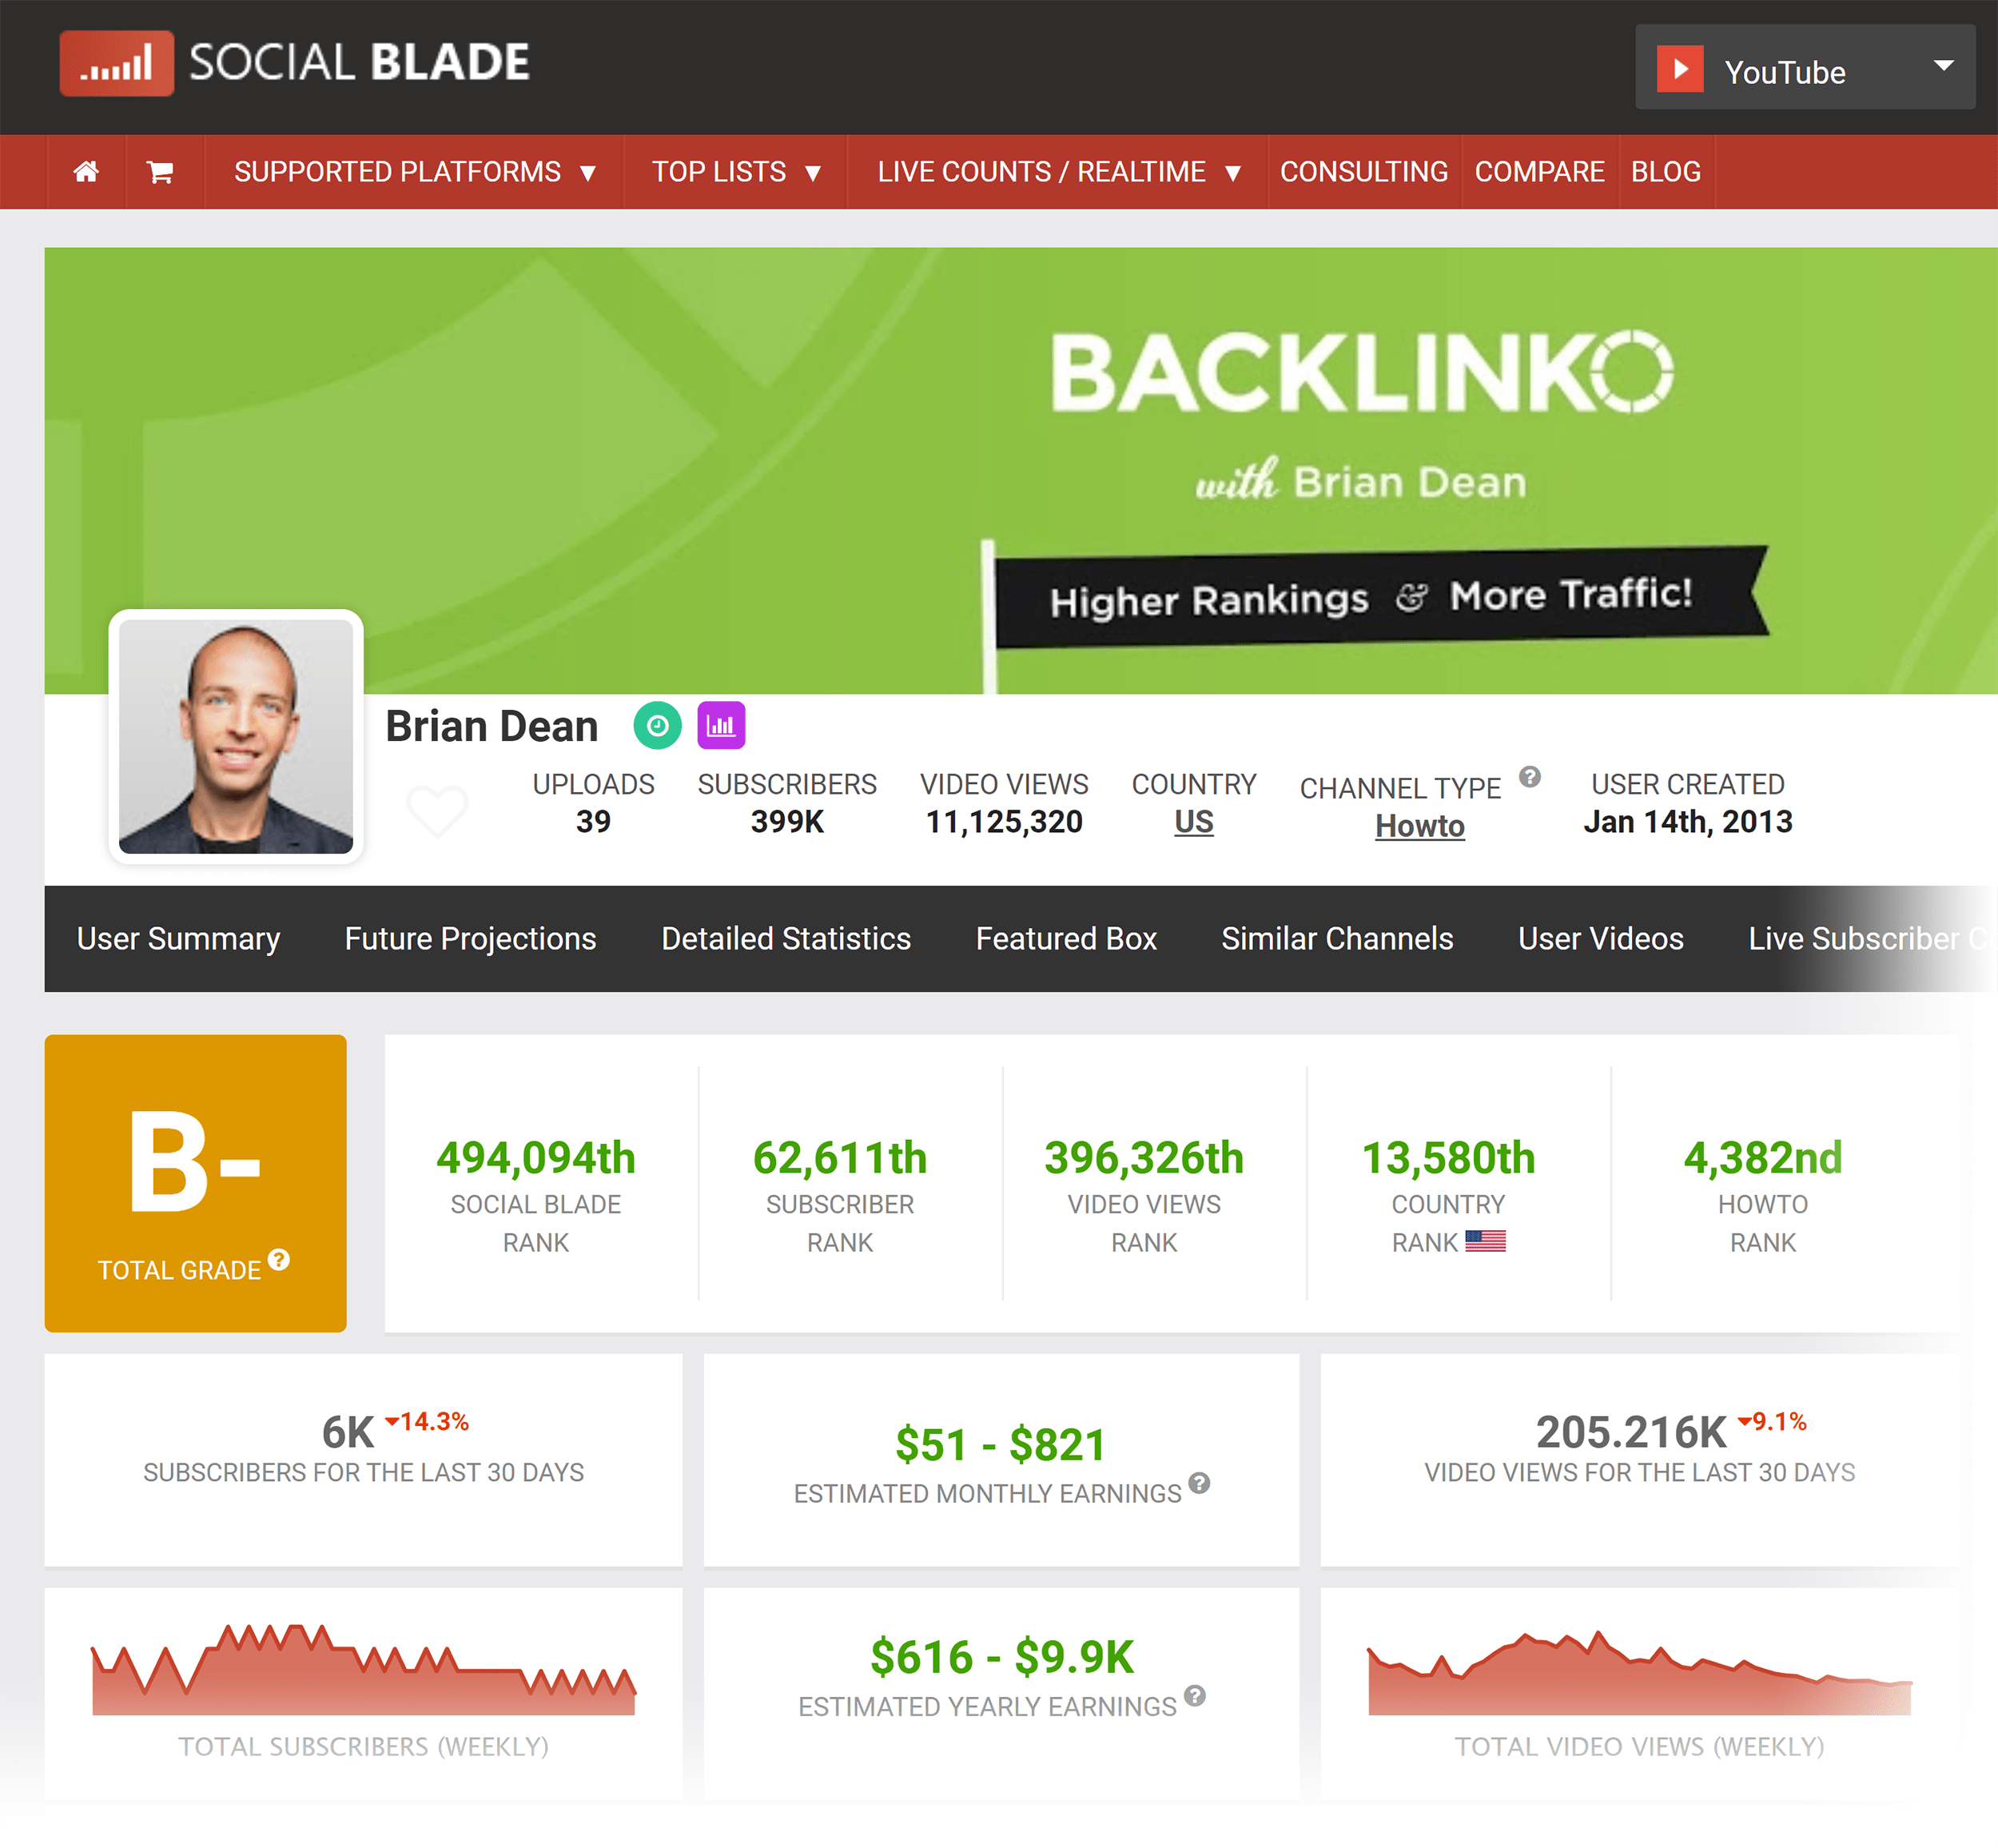 Social Blade – Backlinko YouTube data